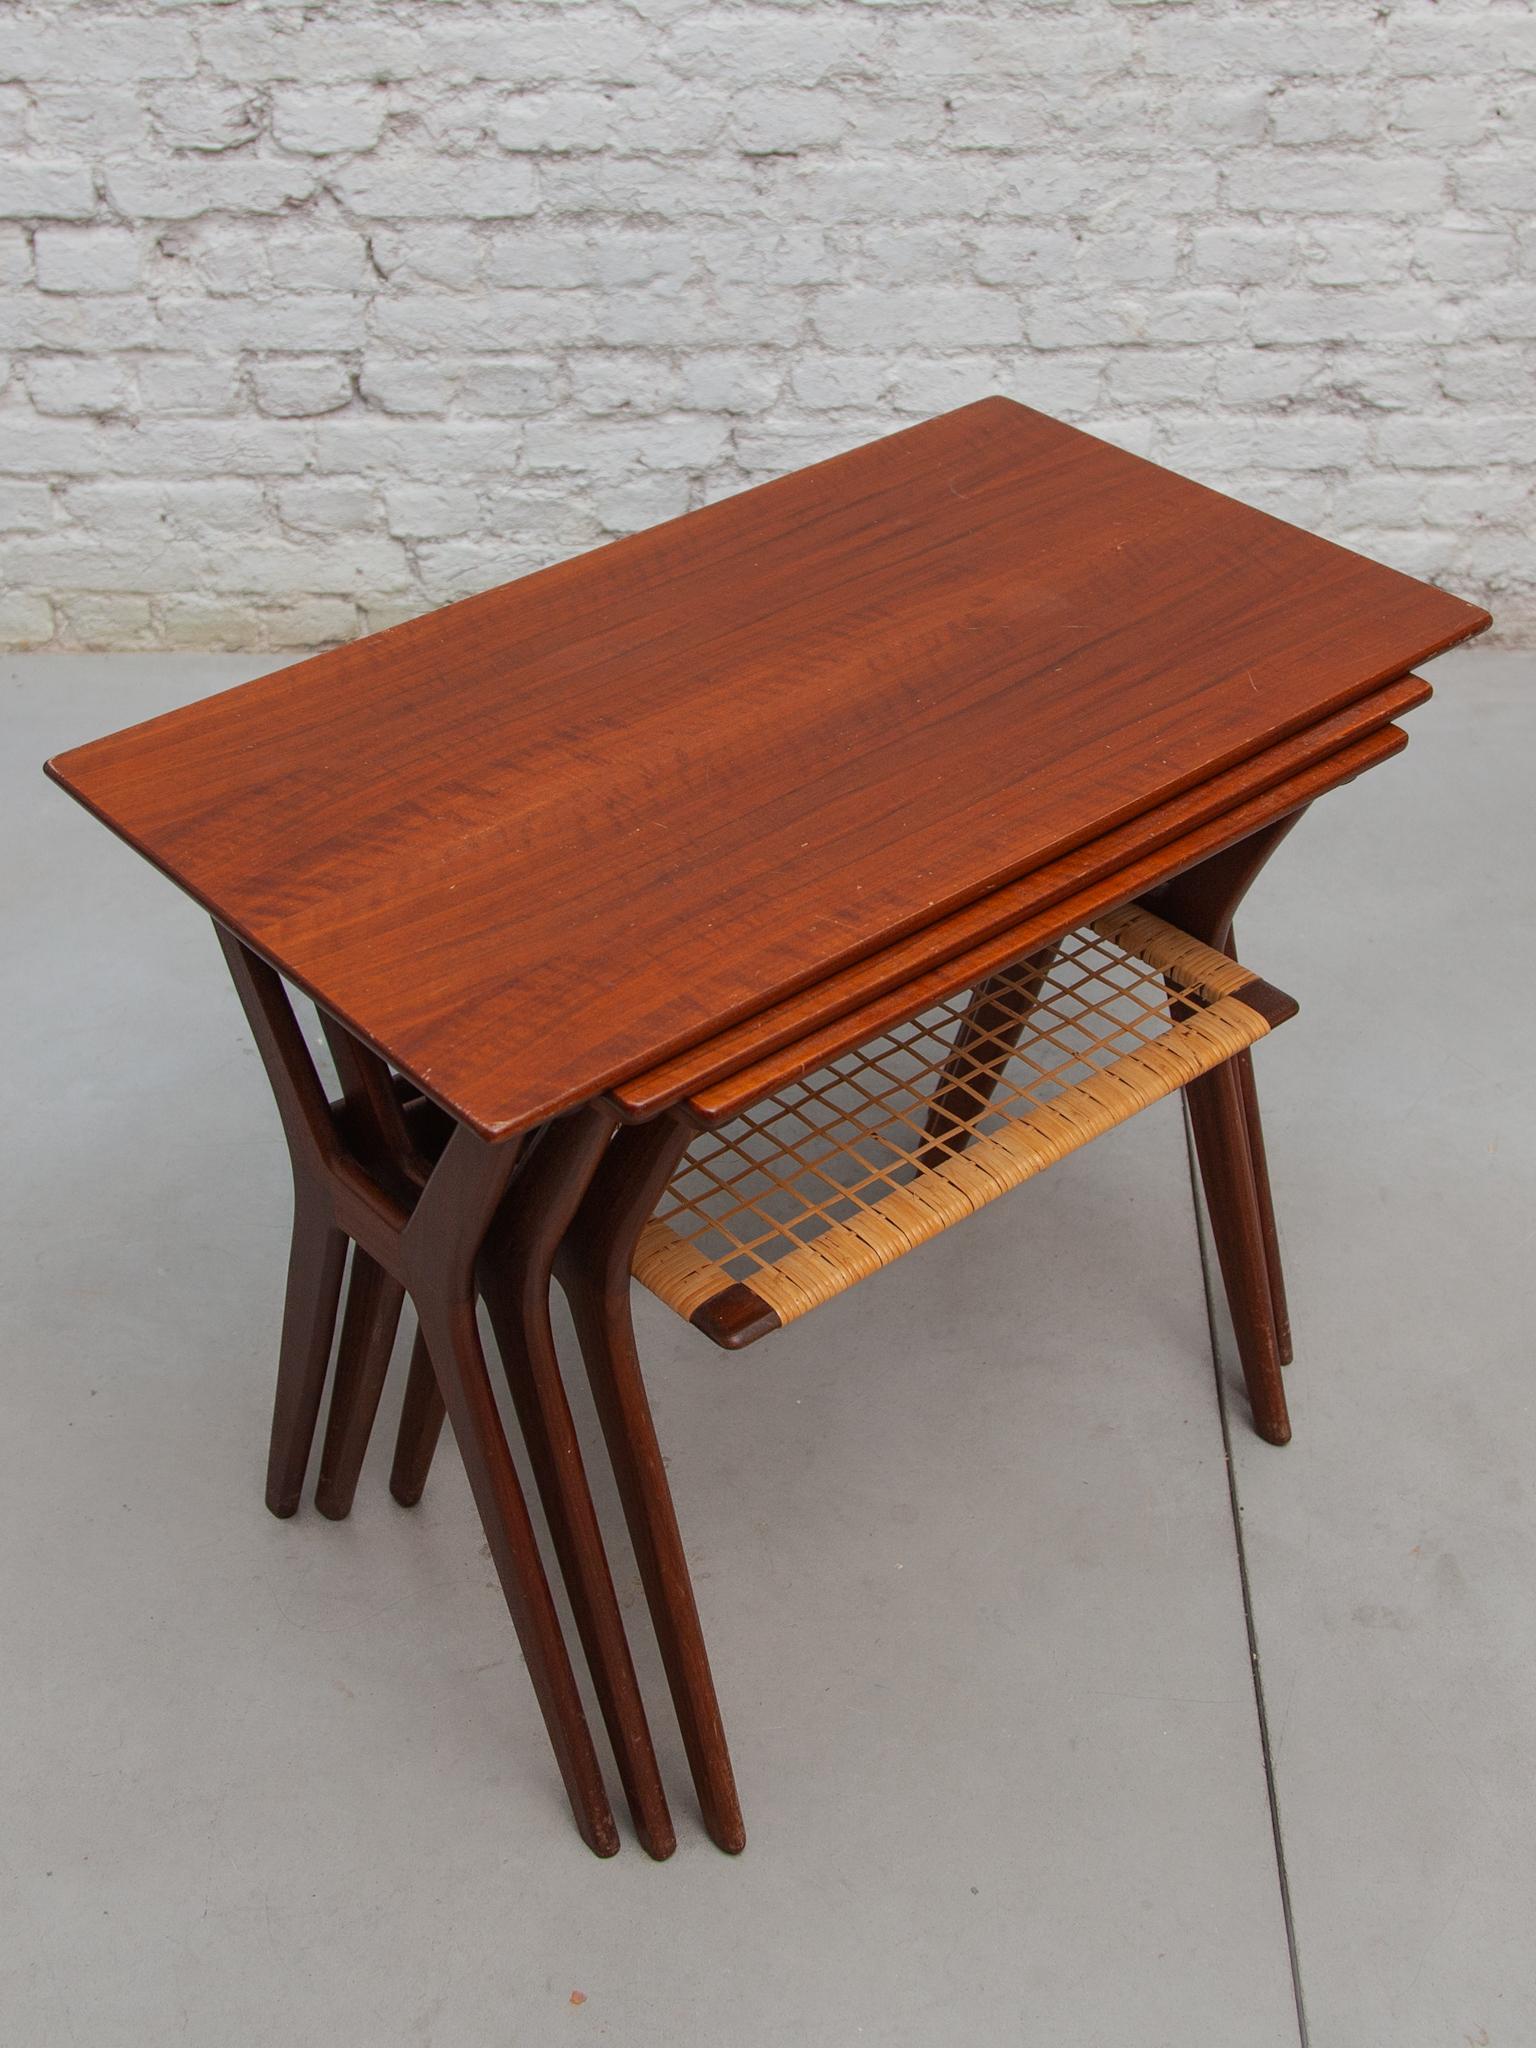 Danish Made in Denmark Set of Three Teak Nesting Tables, Designed by Johannes Andersen